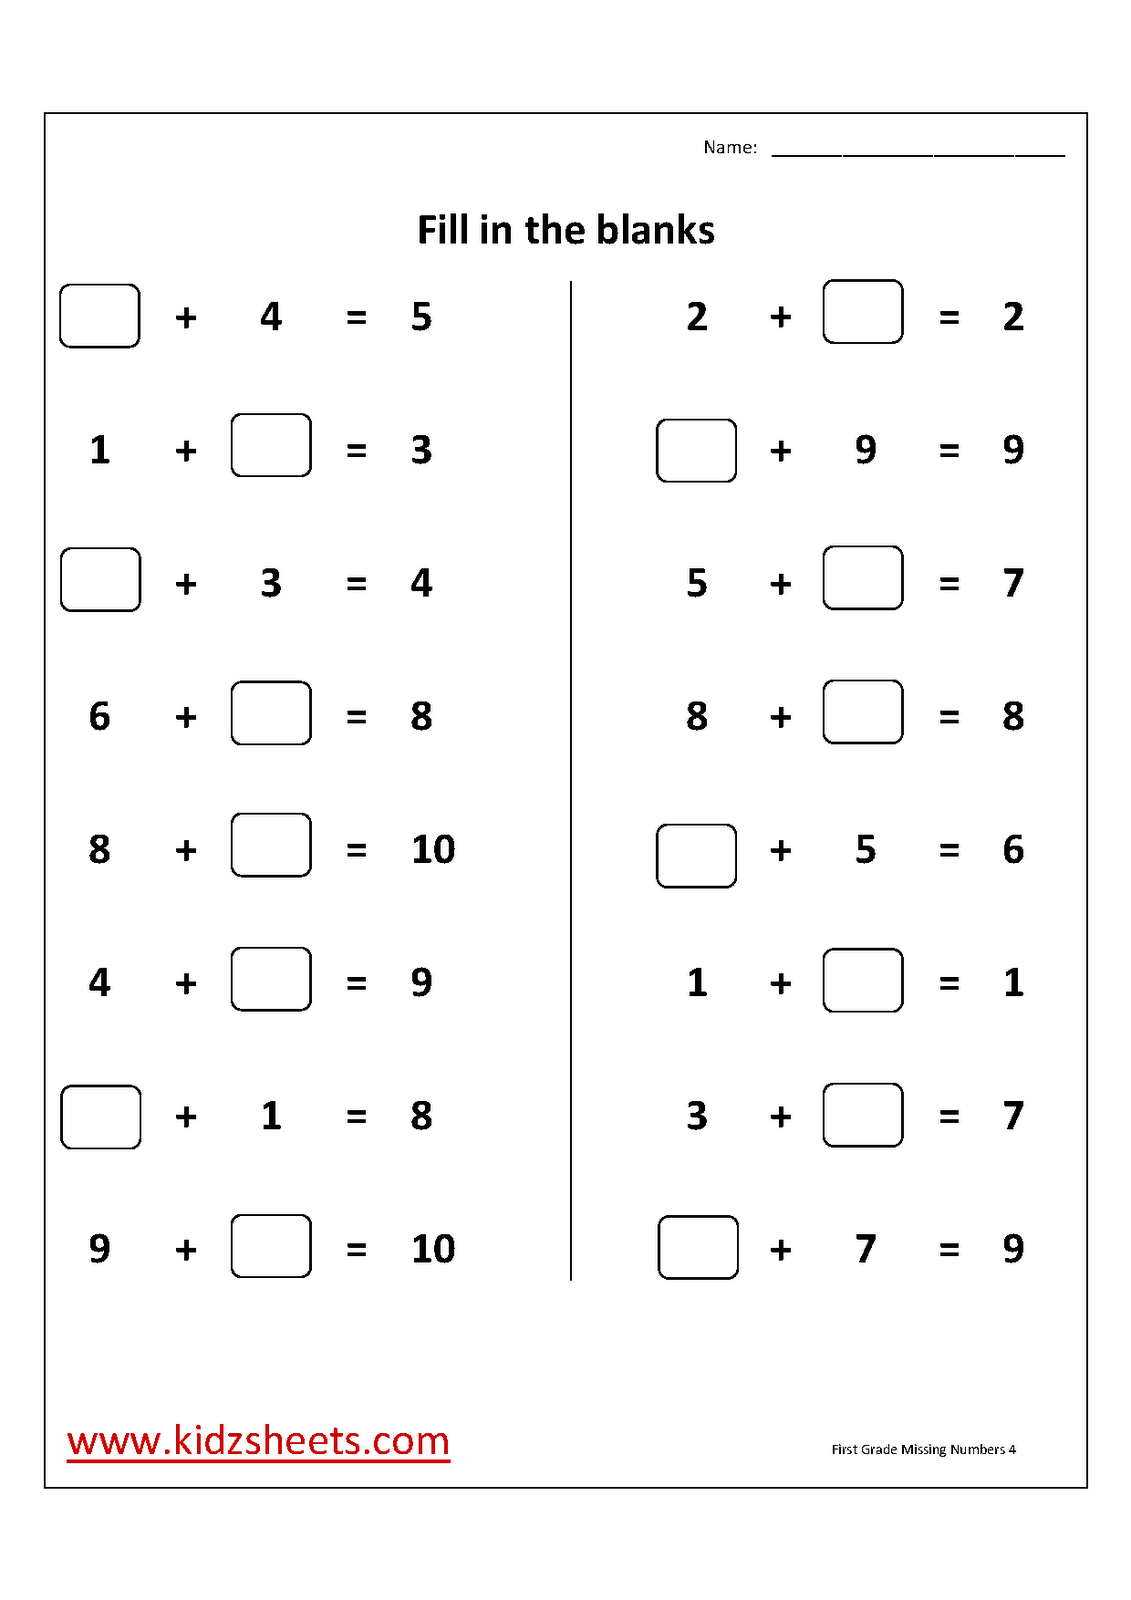 popsicle-missing-number-summer-math-worksheet-for-preschool-and-kindergarten-summer-math